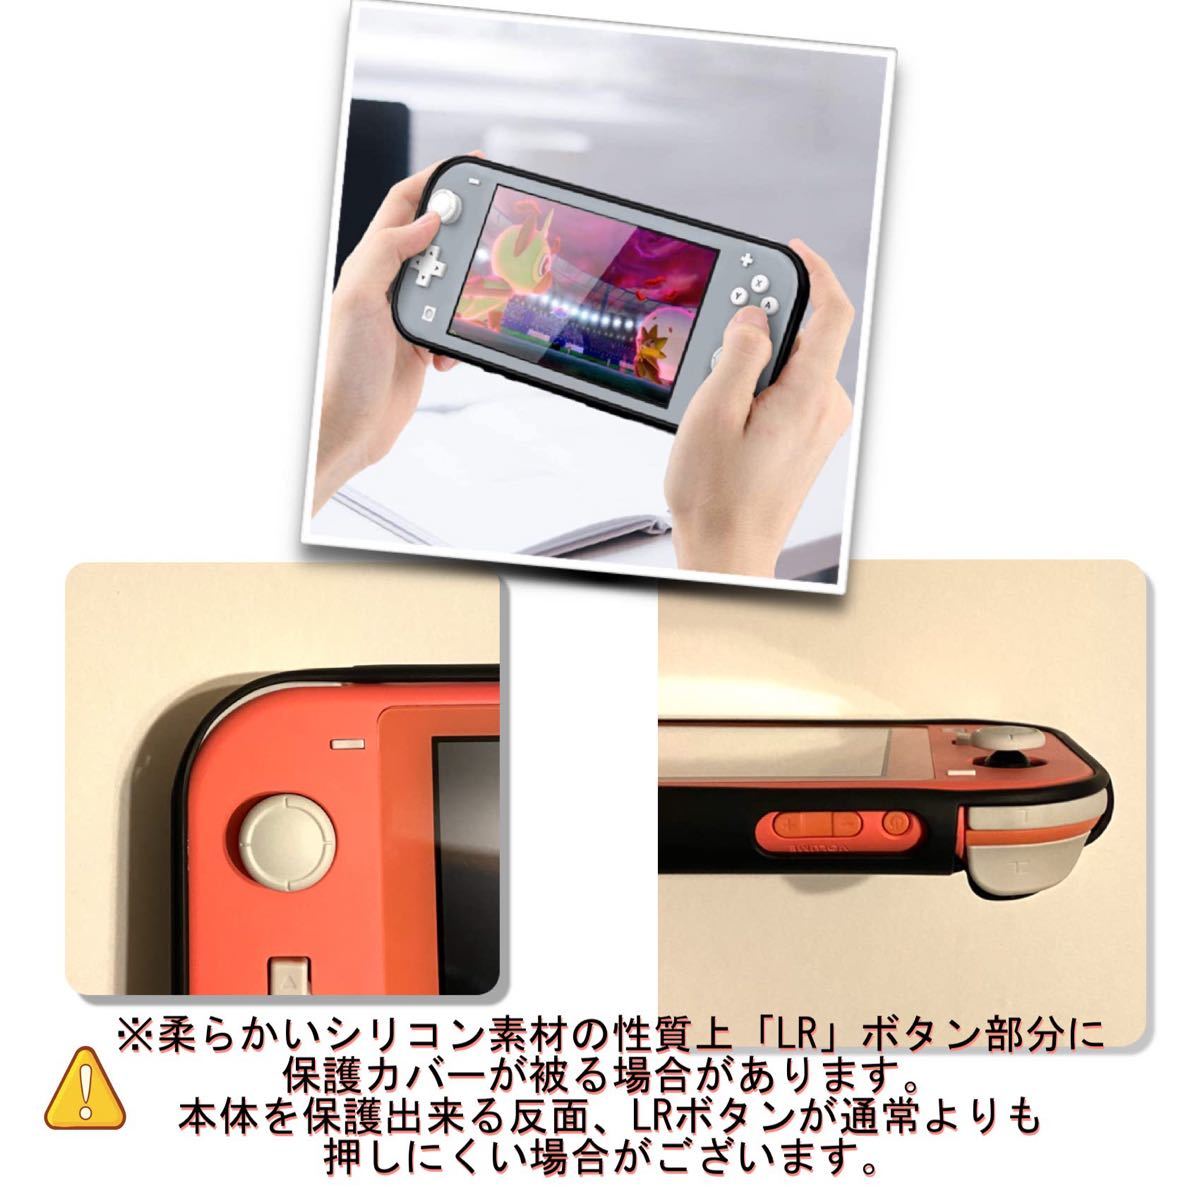 最新Nintendo Switch Lite 持運び専用ケースカバー黒色！送料無料！手触りの良い素材！任天堂スイッチ専用カバー★